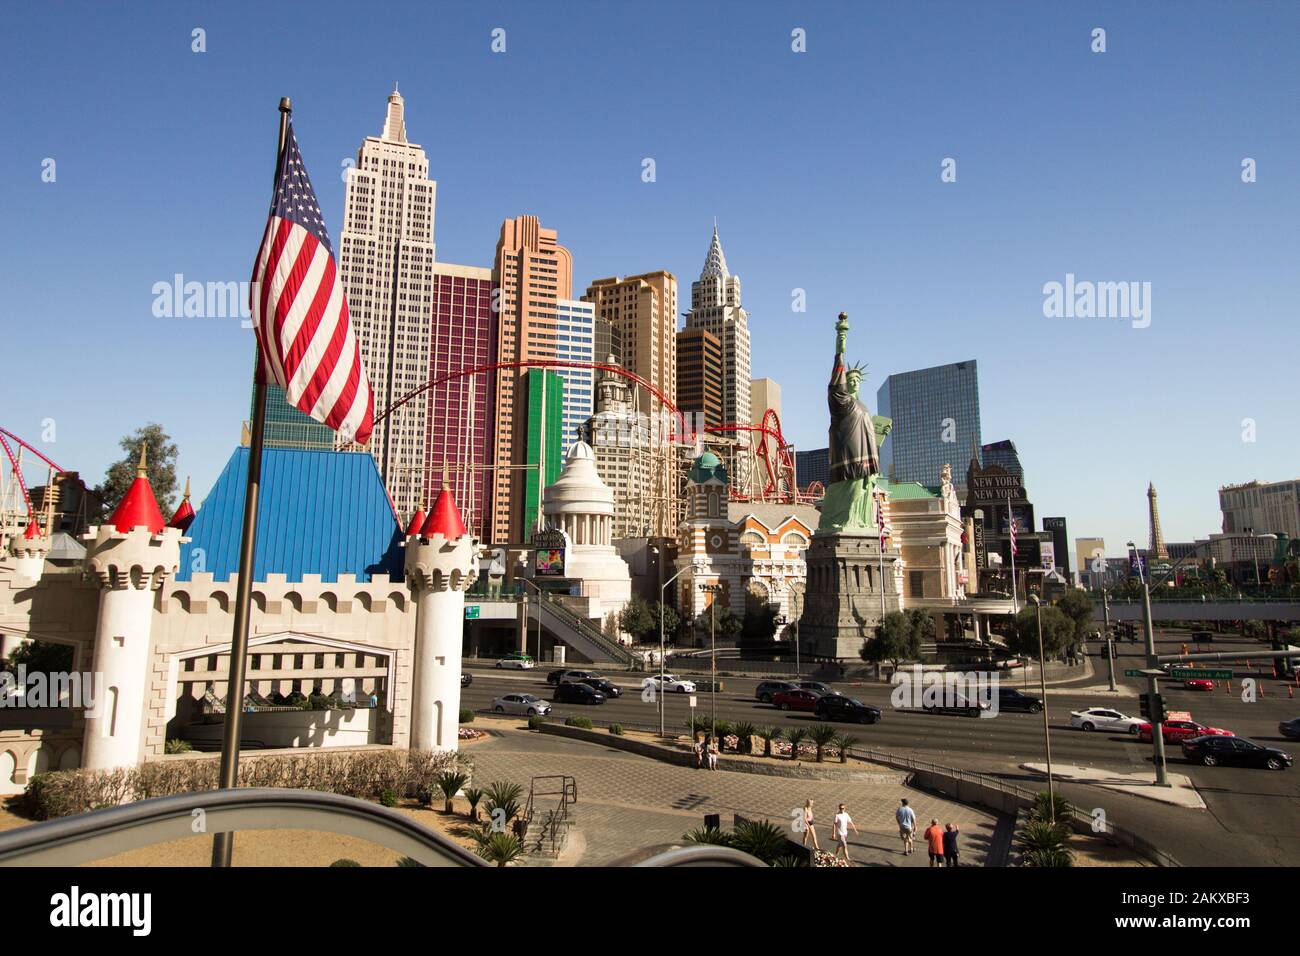 Las Vegas, Nevada - Exterior del New York New York Resort and Casino en Las Vegas Strip con la replica de la Estatua de la libertad y la bandera americana. Foto de stock